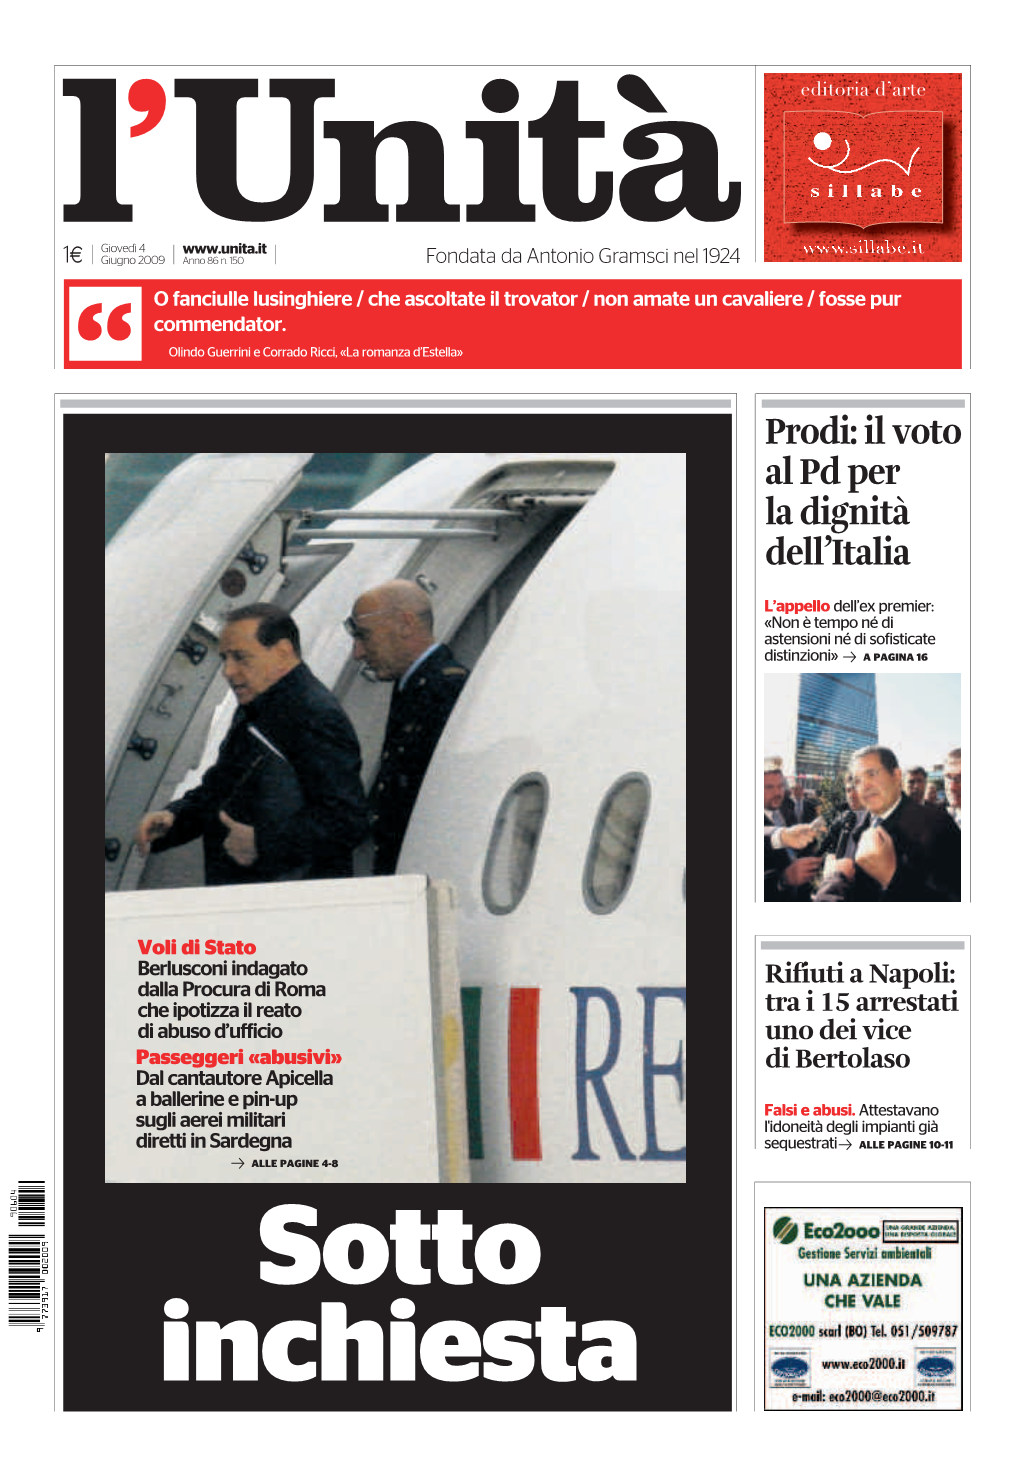 Prodi: Il Voto Al Pd Per La Dignità Dell’Italia